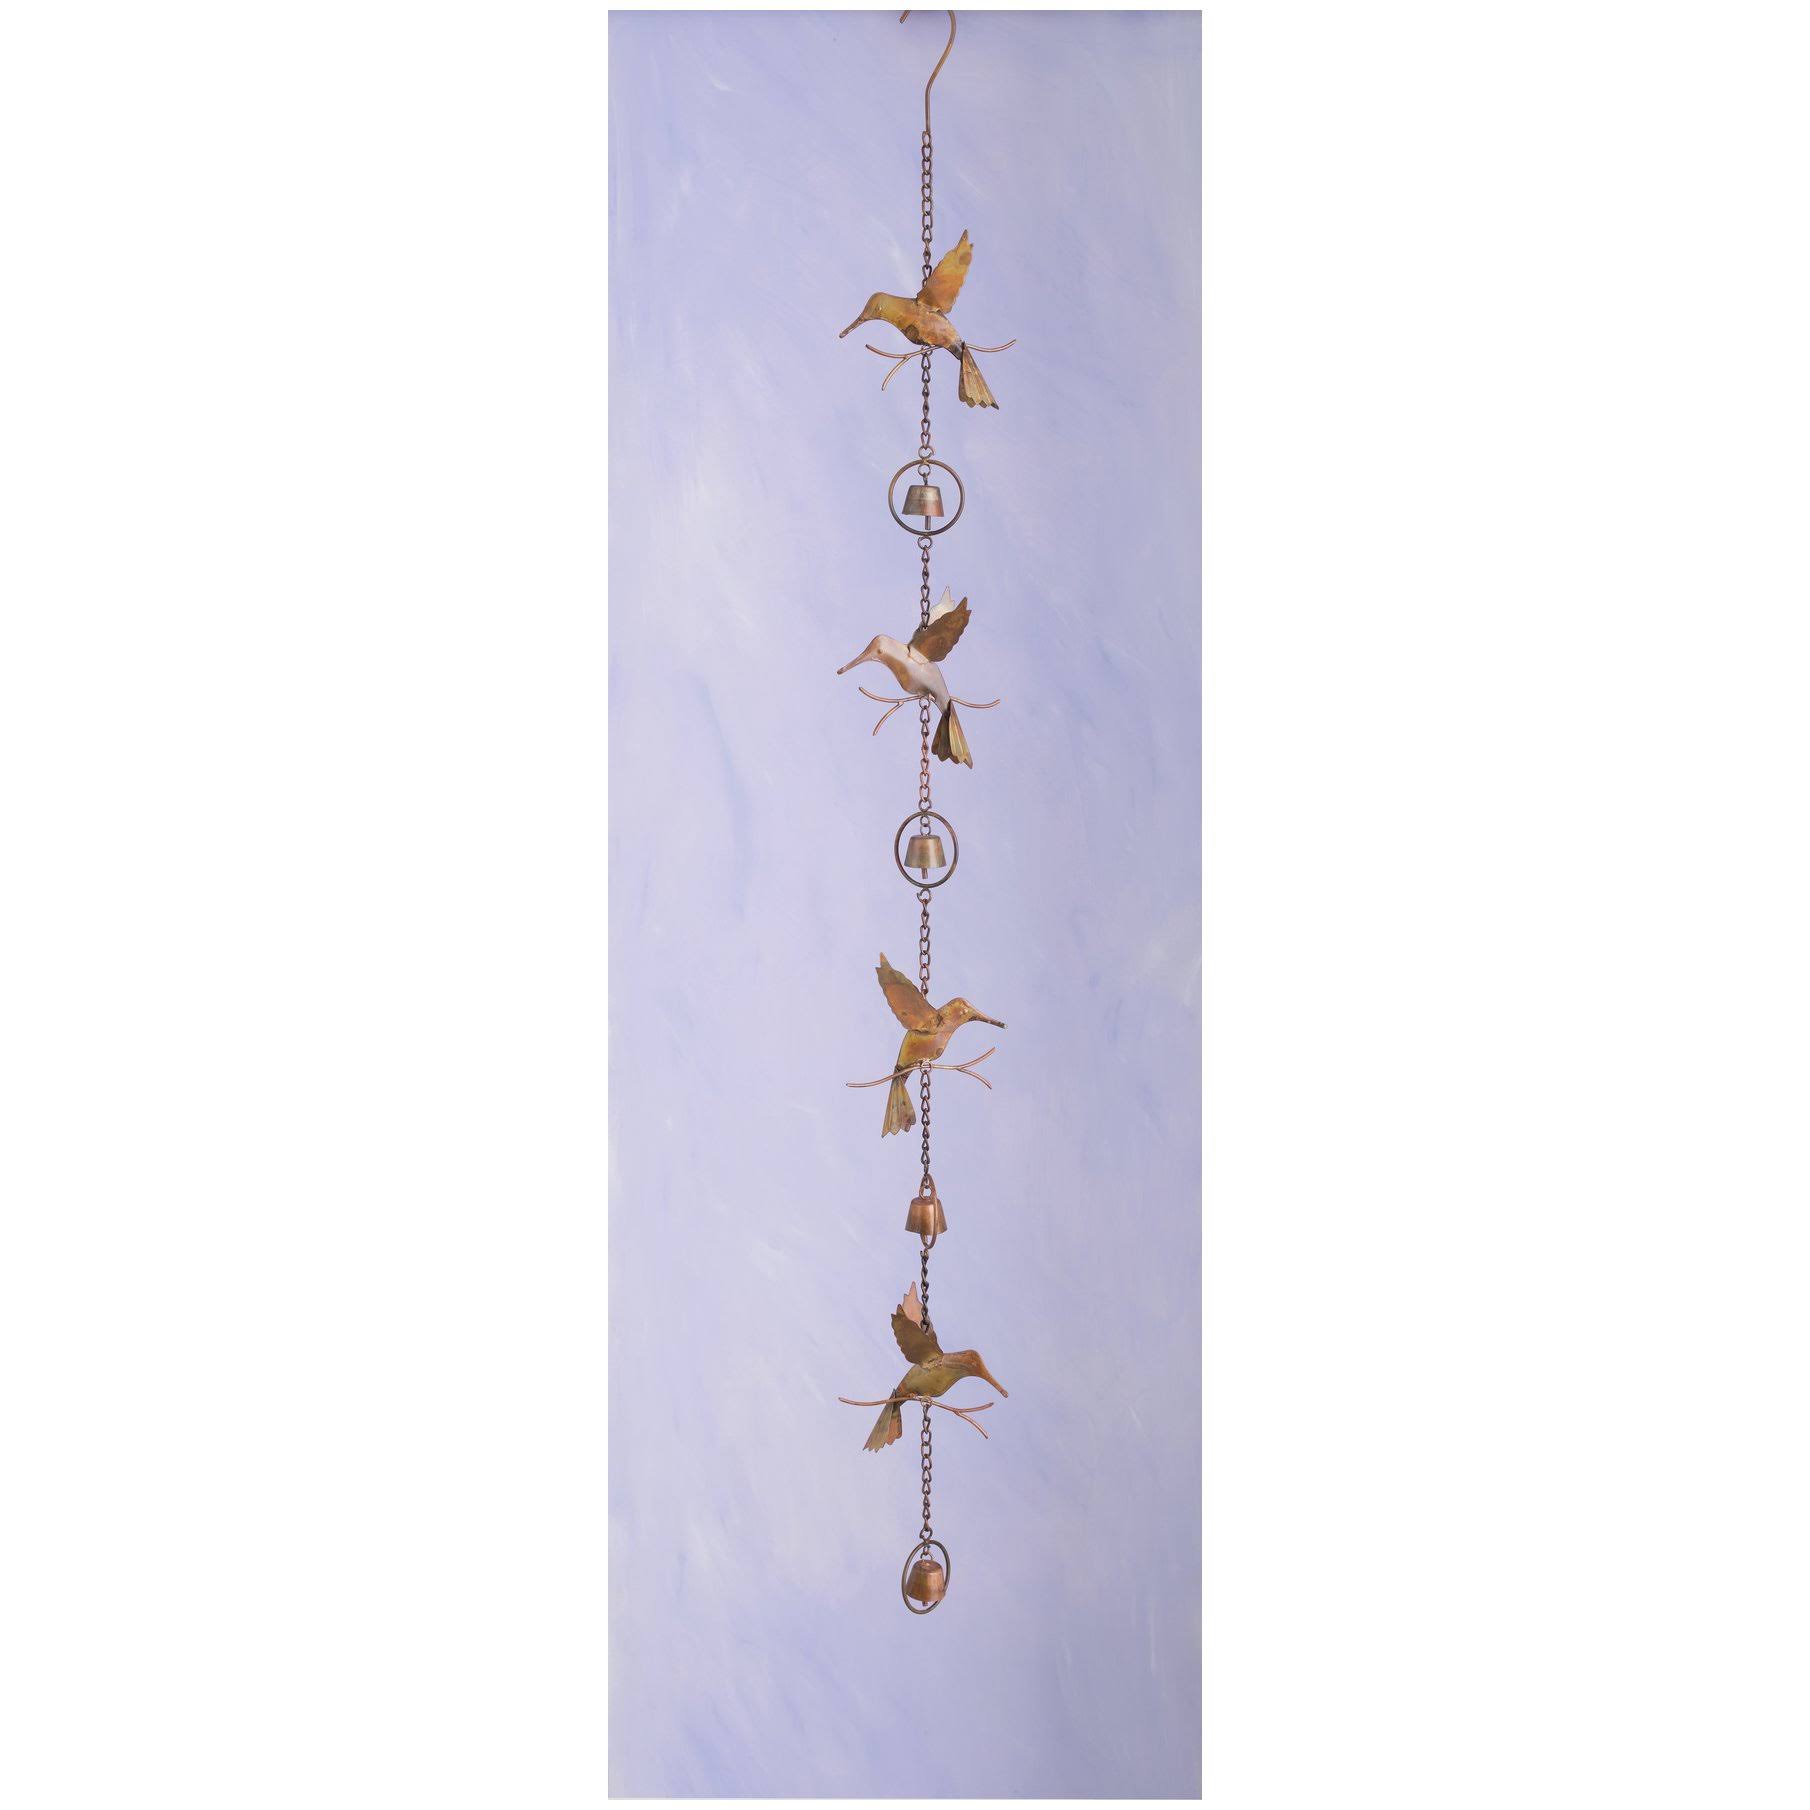 Ancient Graffiti Ancientag86023 Hummingbird Bells Flamed Hanging Ornament